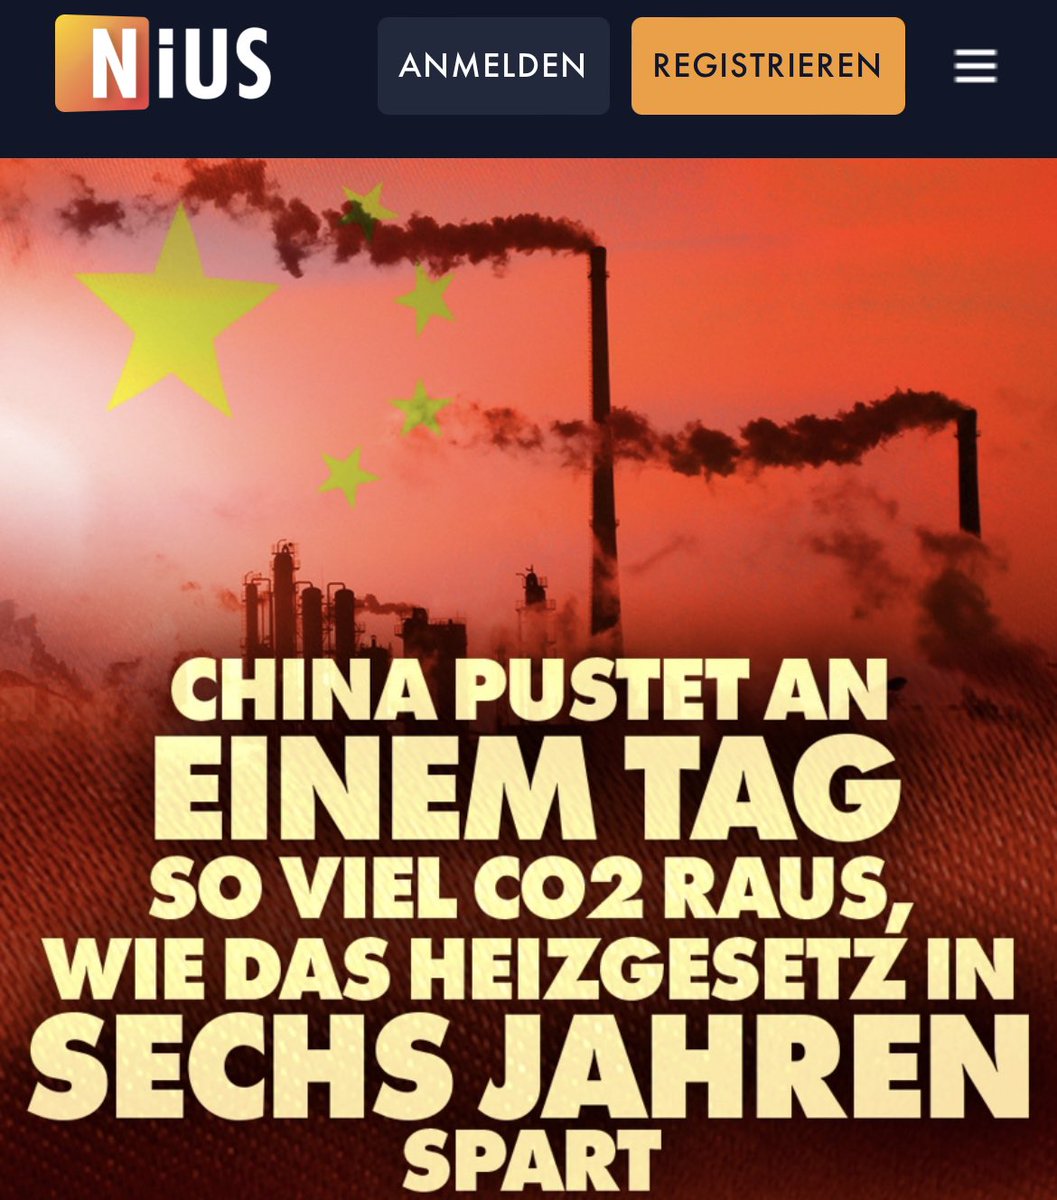 Guten Morgen! Das heute zu beschließende #Heizungsgesetz wird in 6 Jahren so viel CO2 einsparen, wie China an einem Tag rausballert. #NIUS: nius.de/Politik/china-…